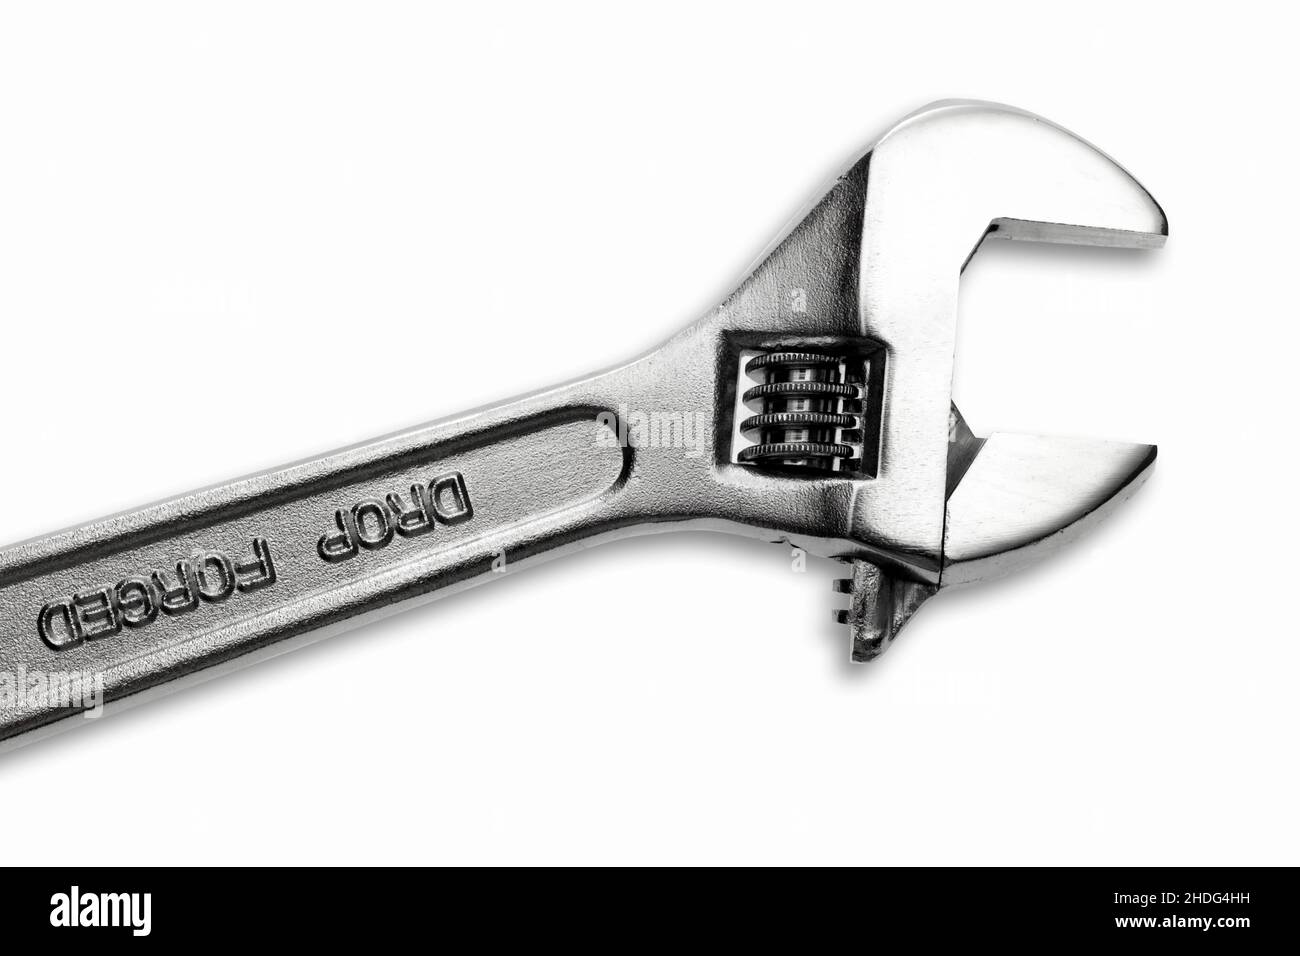 adjustable wrench, adjustment key, adjustable wrenchs Stock Photo